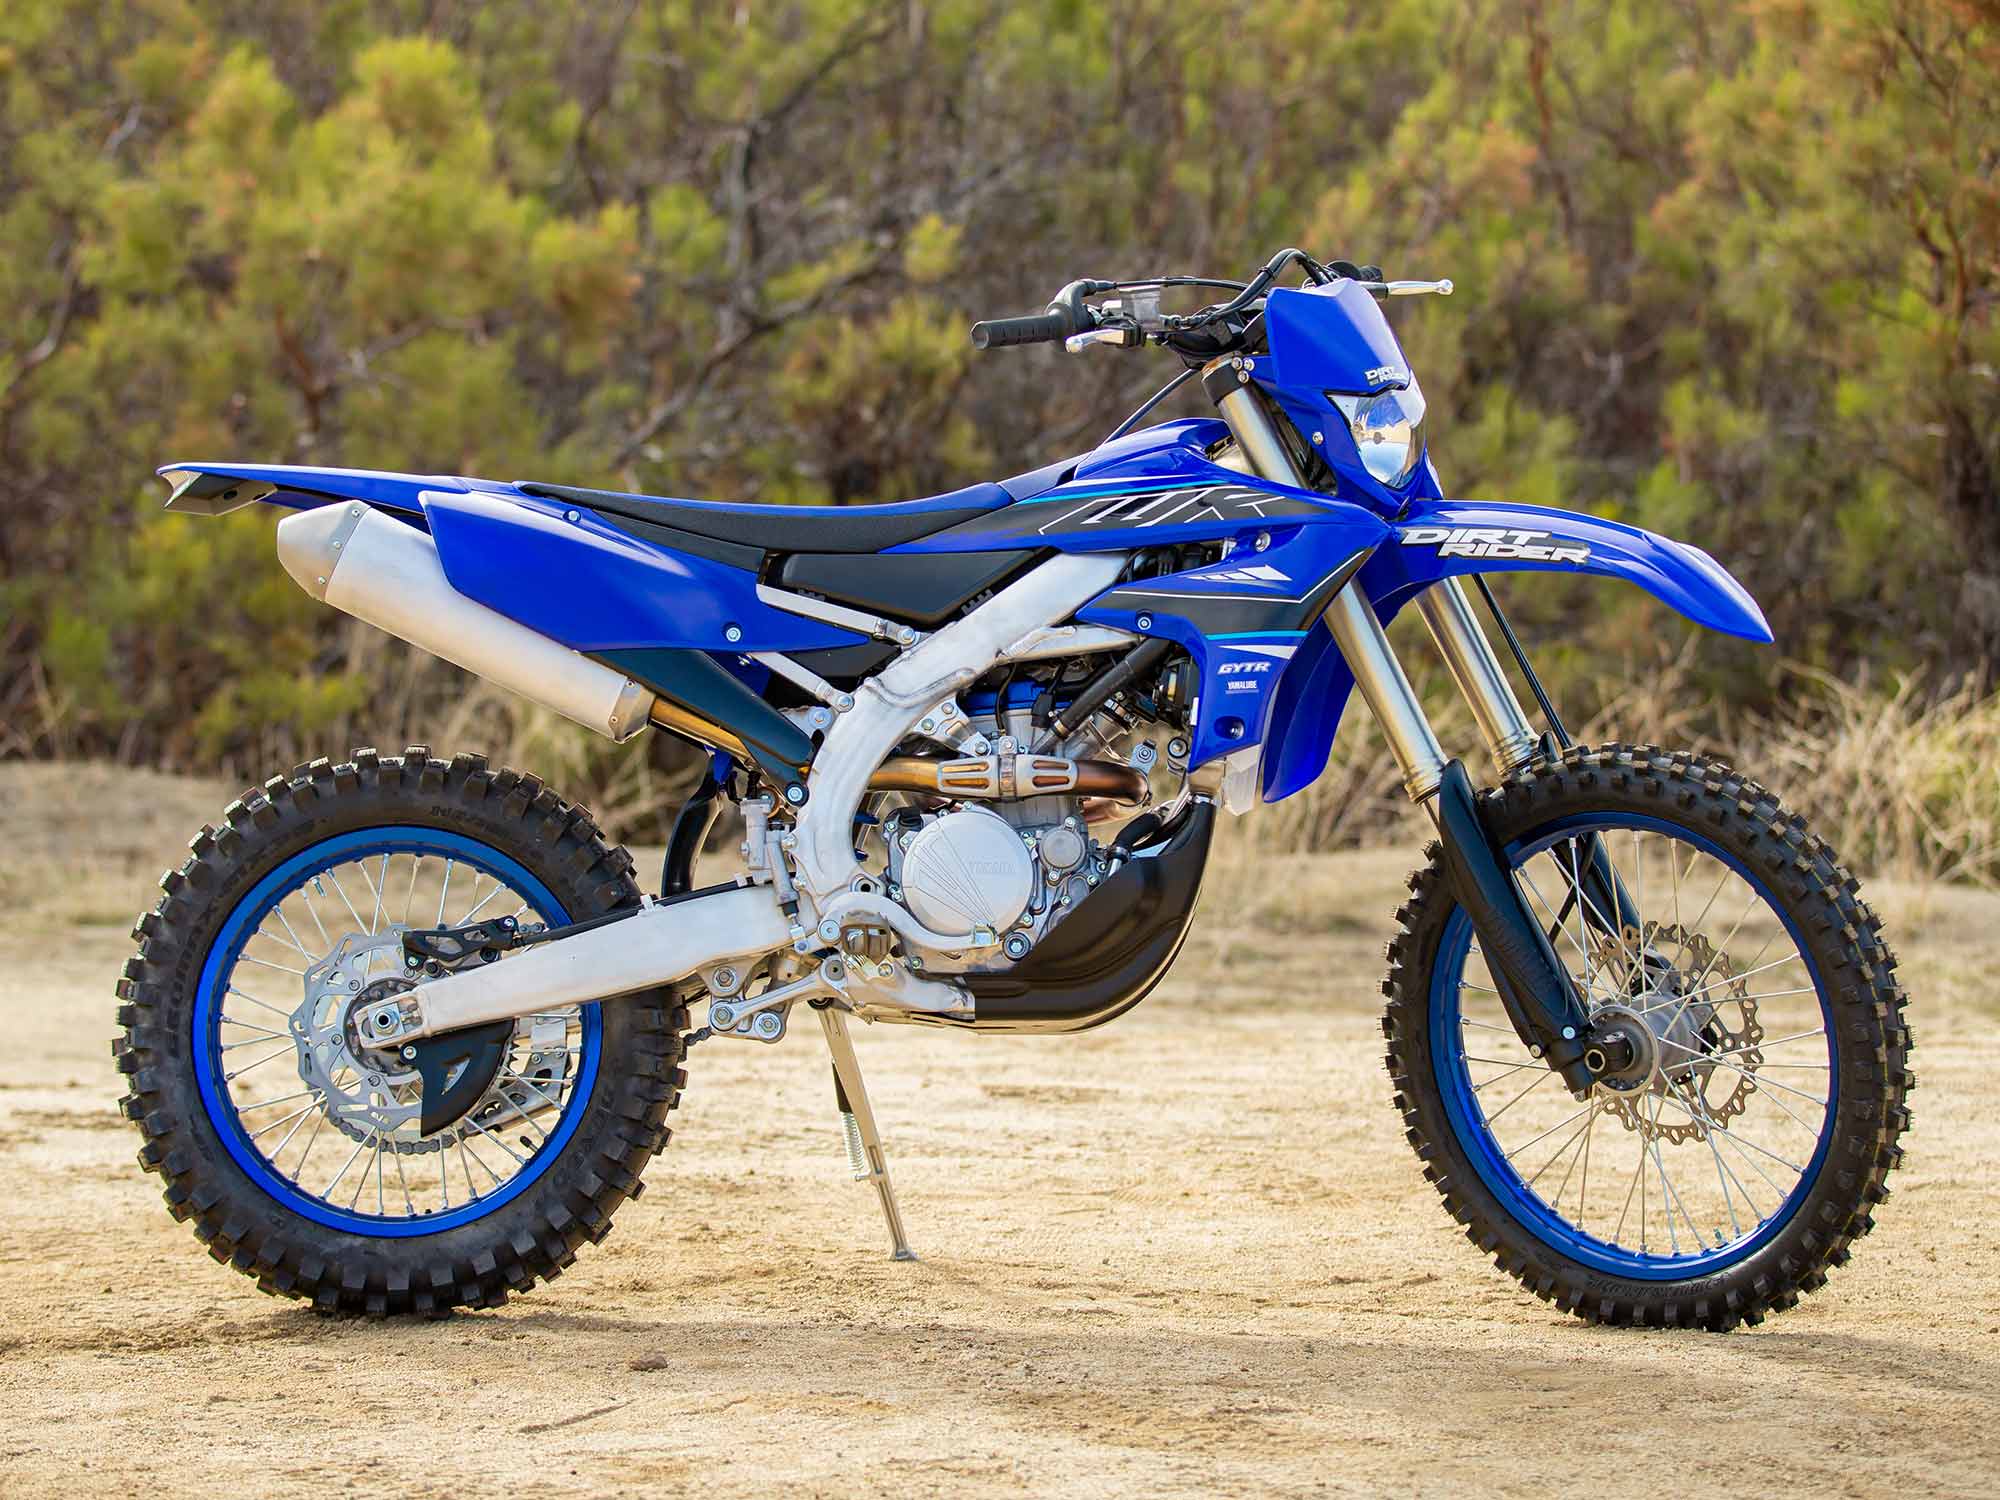 cansado Adquisición Variedad 2021 Yamaha WR250F Review | Dirt Rider